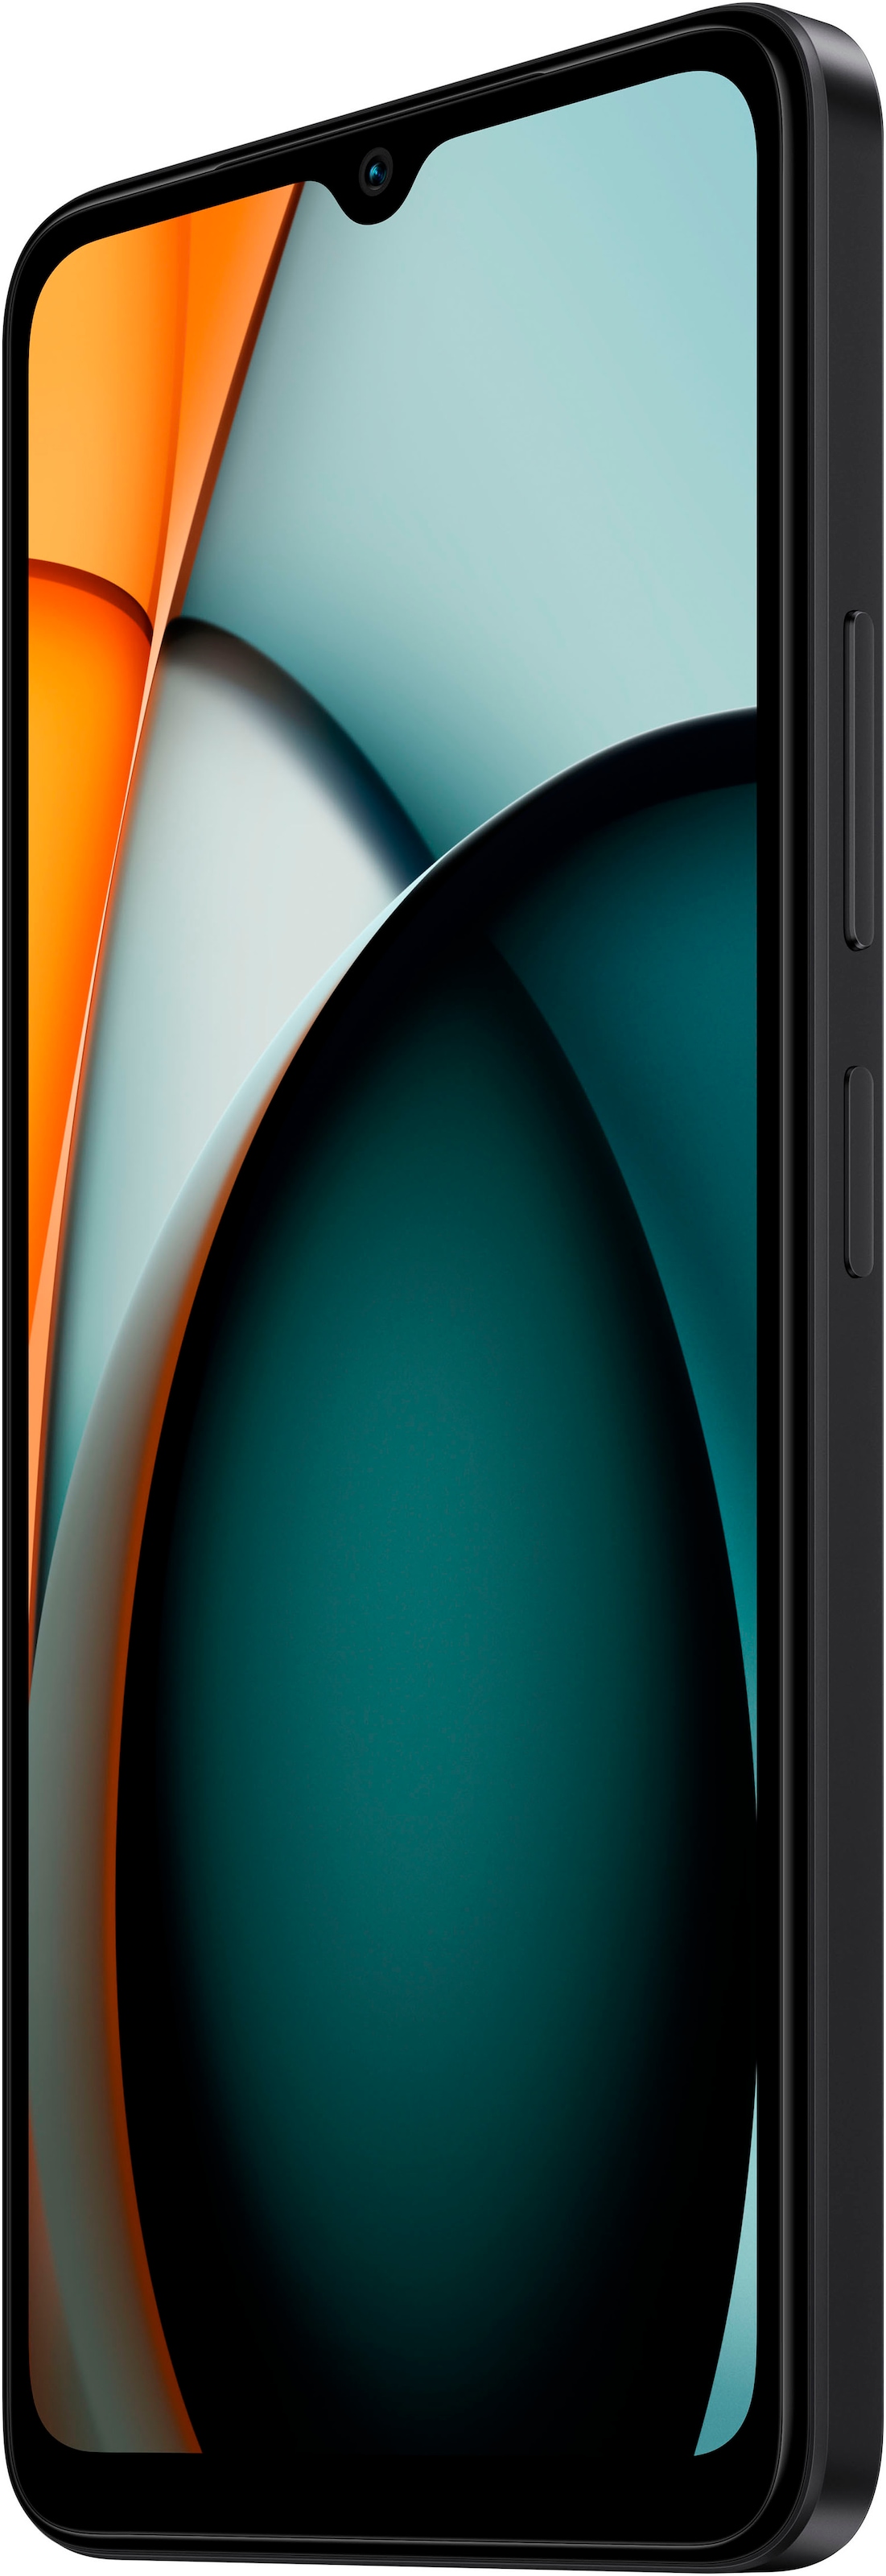 Xiaomi Smartphone »Redmi A3 128GB«, Mitternachtsschwarz, 17,04 cm/6,71 Zoll, 128 GB Speicherplatz, 8 MP Kamera